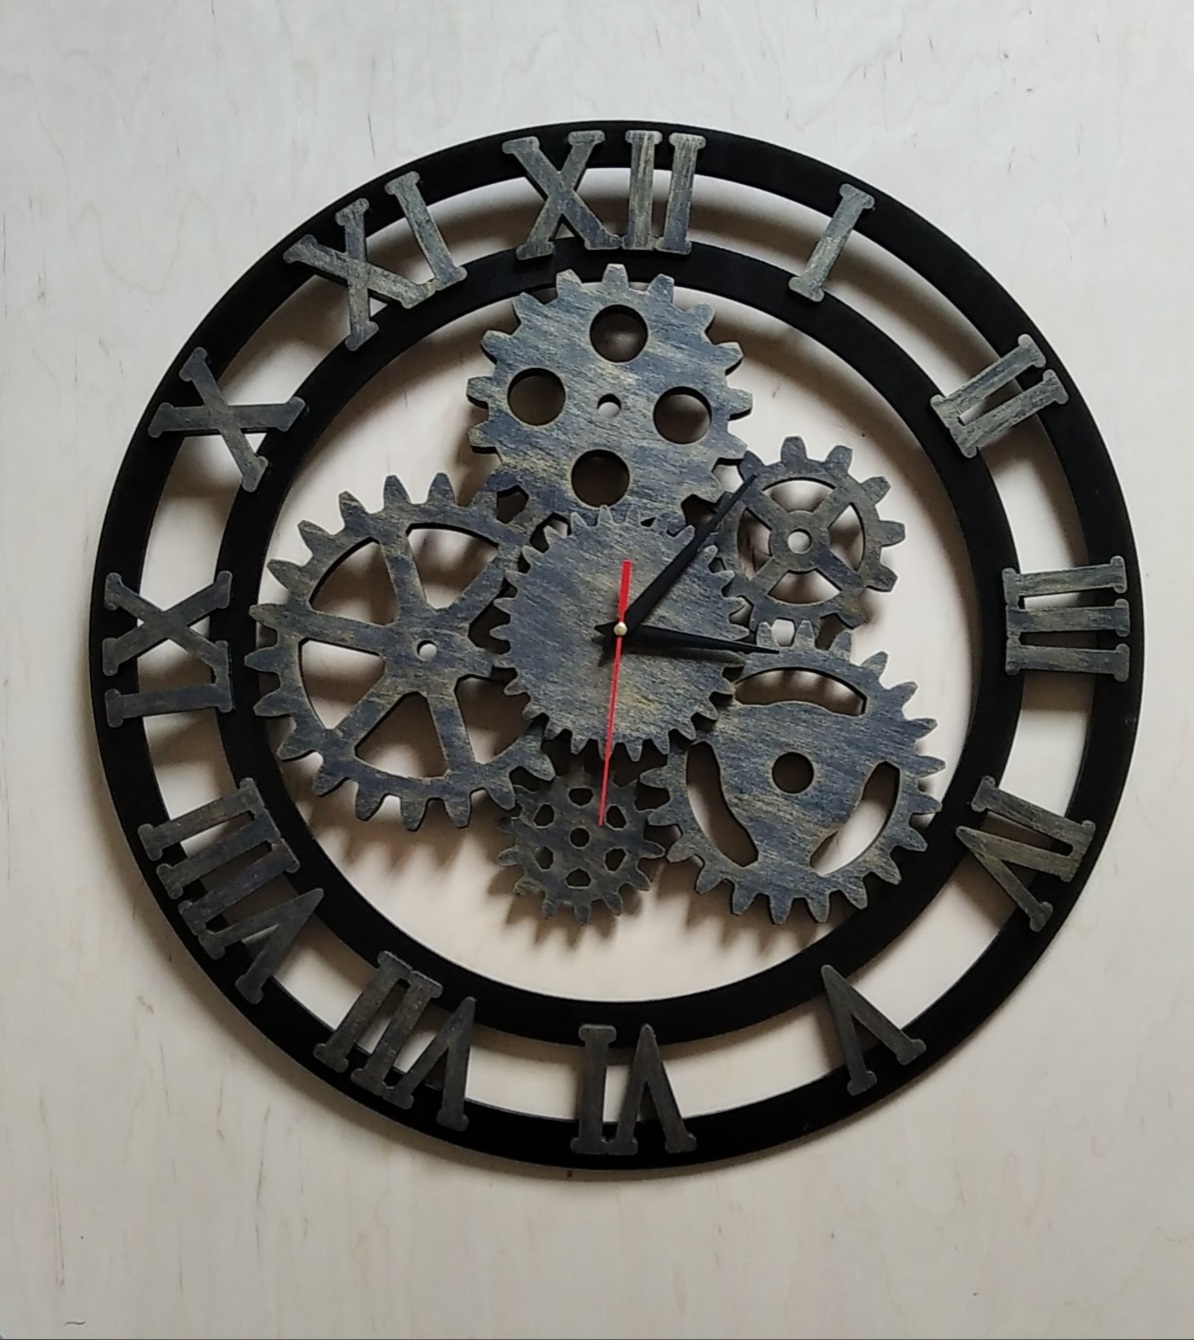 Laser Cut Roman Numerals Gear Clock Free CDR Vectors Art